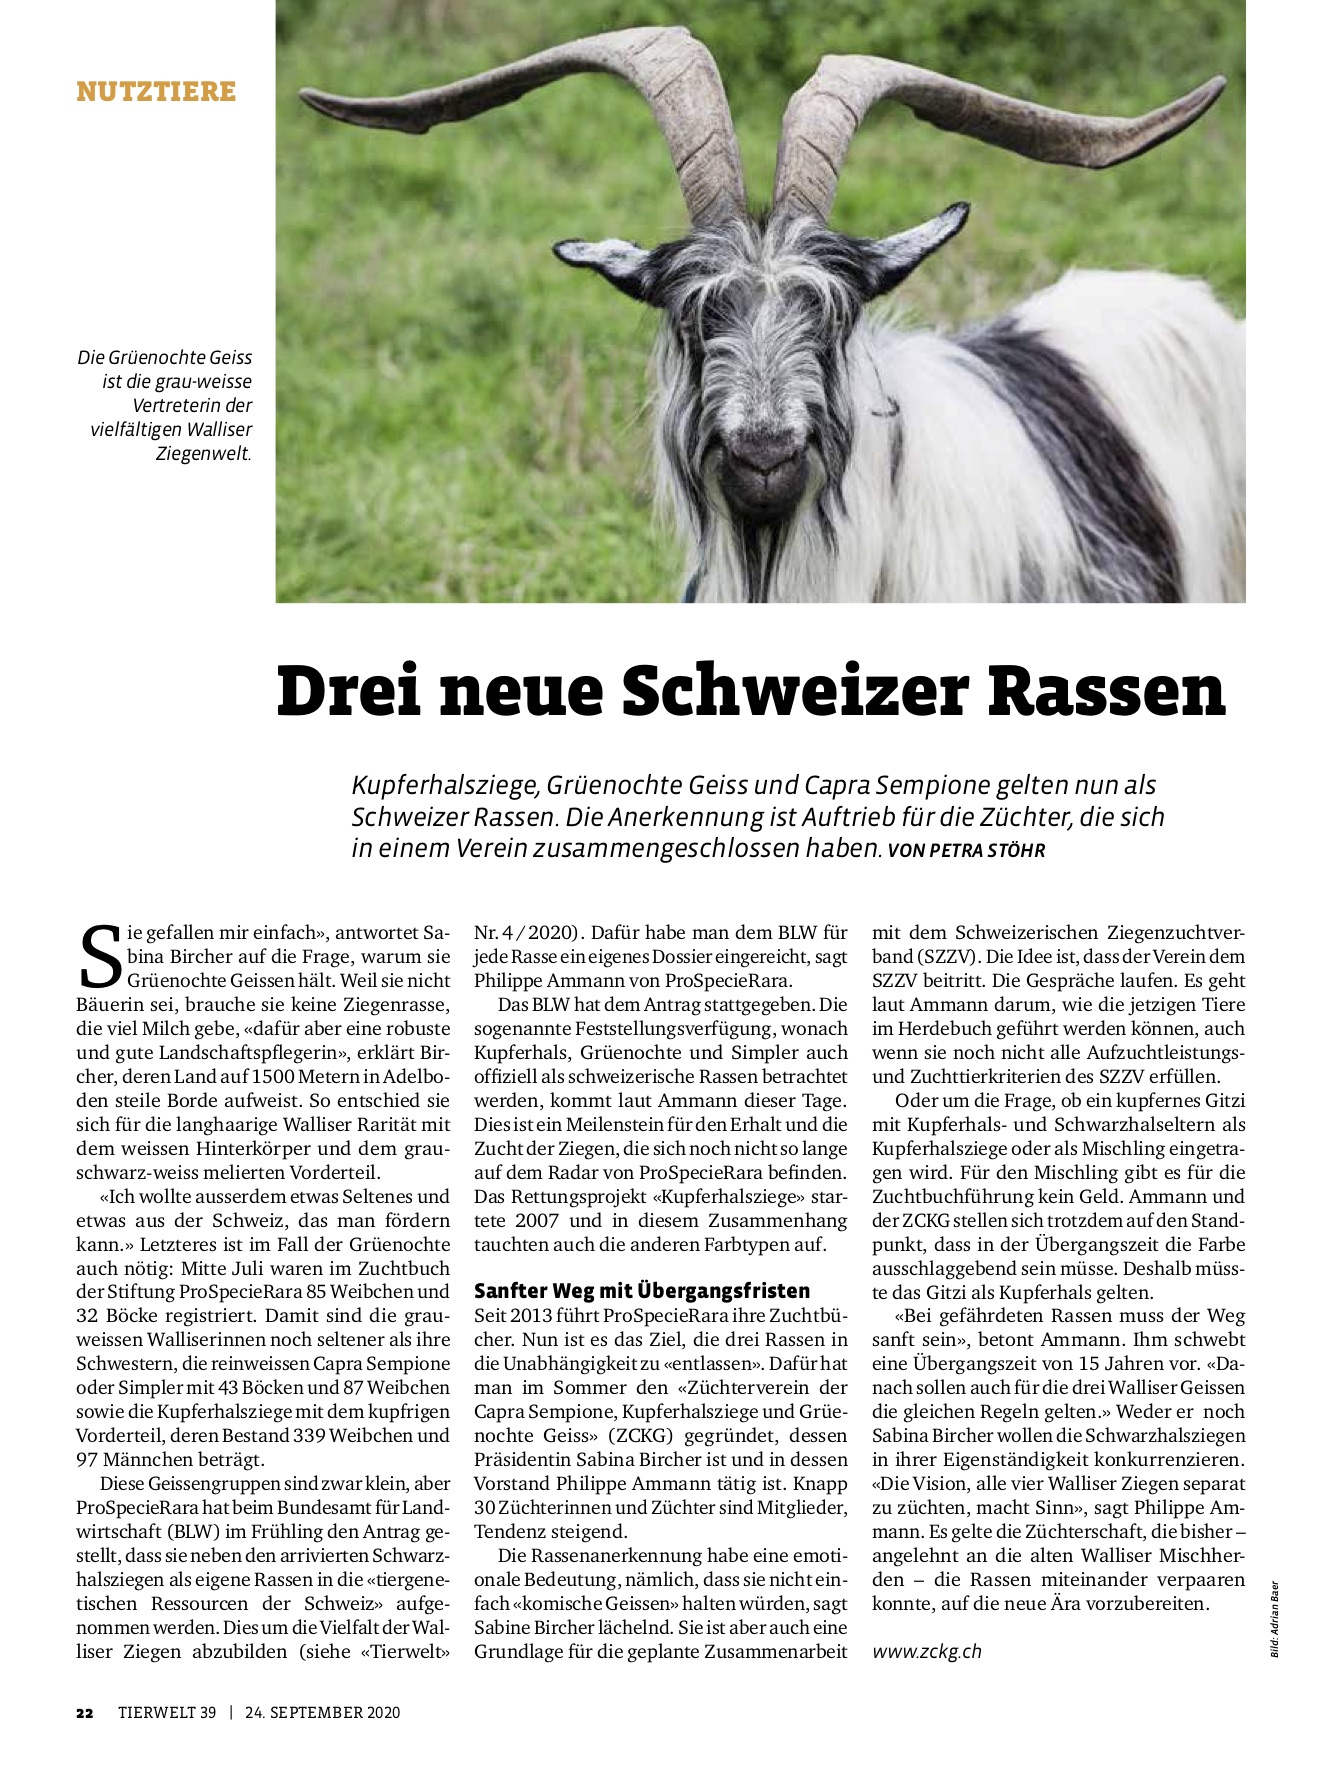 Tierwelt - Drei neue Schweizer Rassen _24092020 Kopiejpg